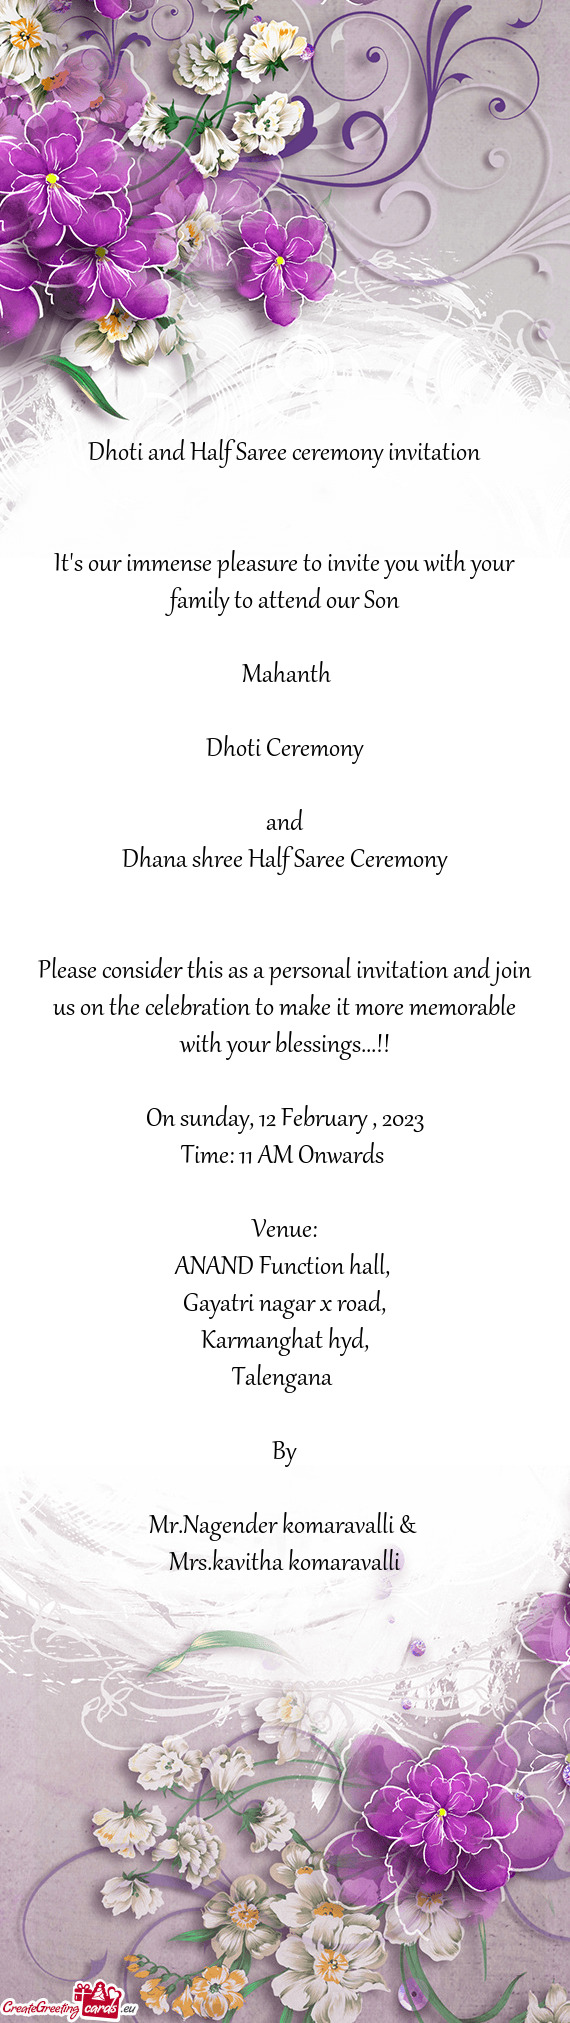 Dhana shree Half Saree Ceremony